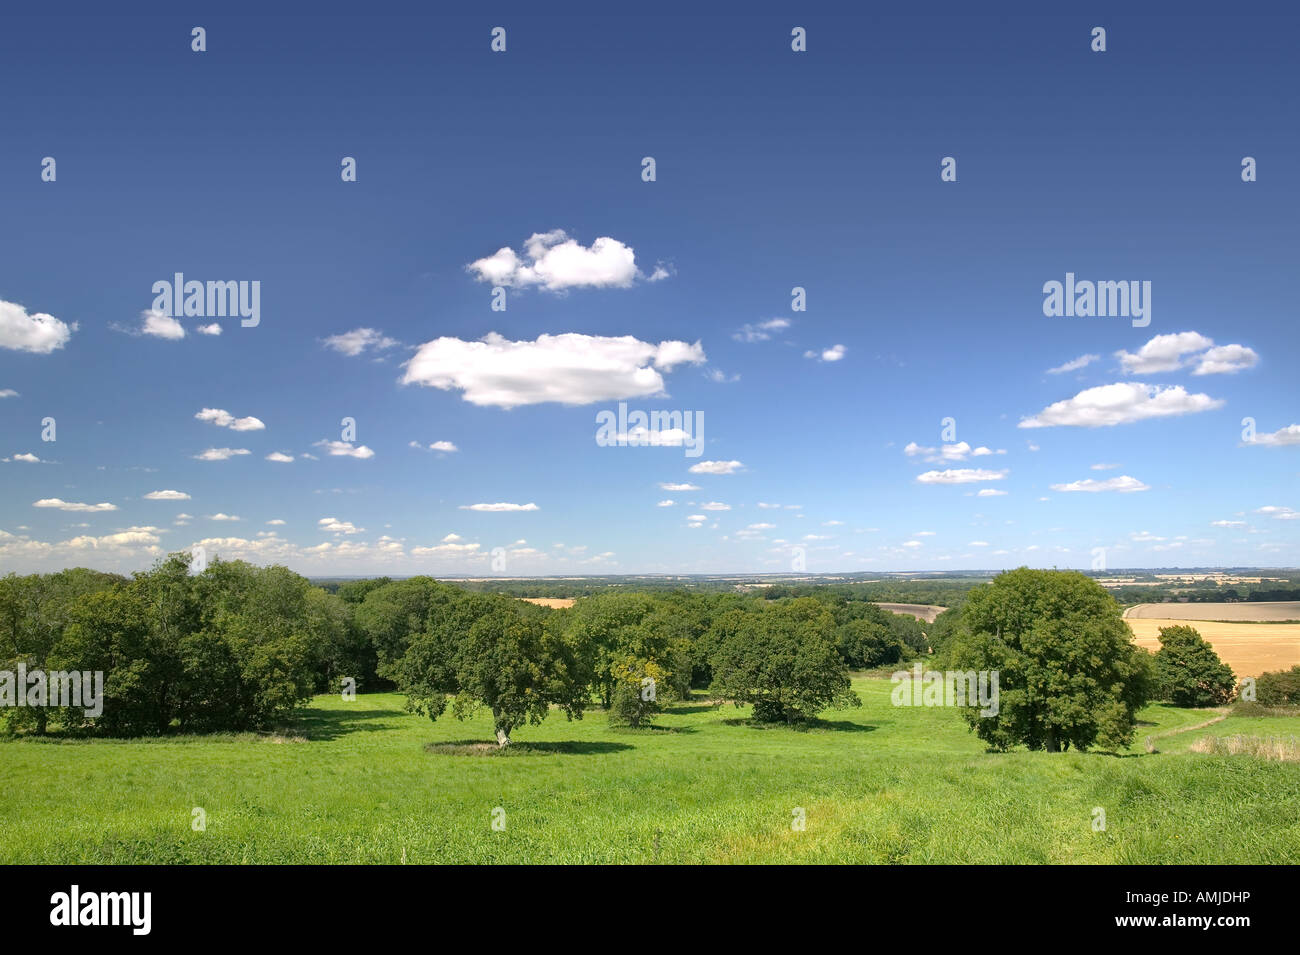 Alberi di quercia in primo piano e i campi nella distanza sotto un azzurro cielo nuvoloso Foto Stock